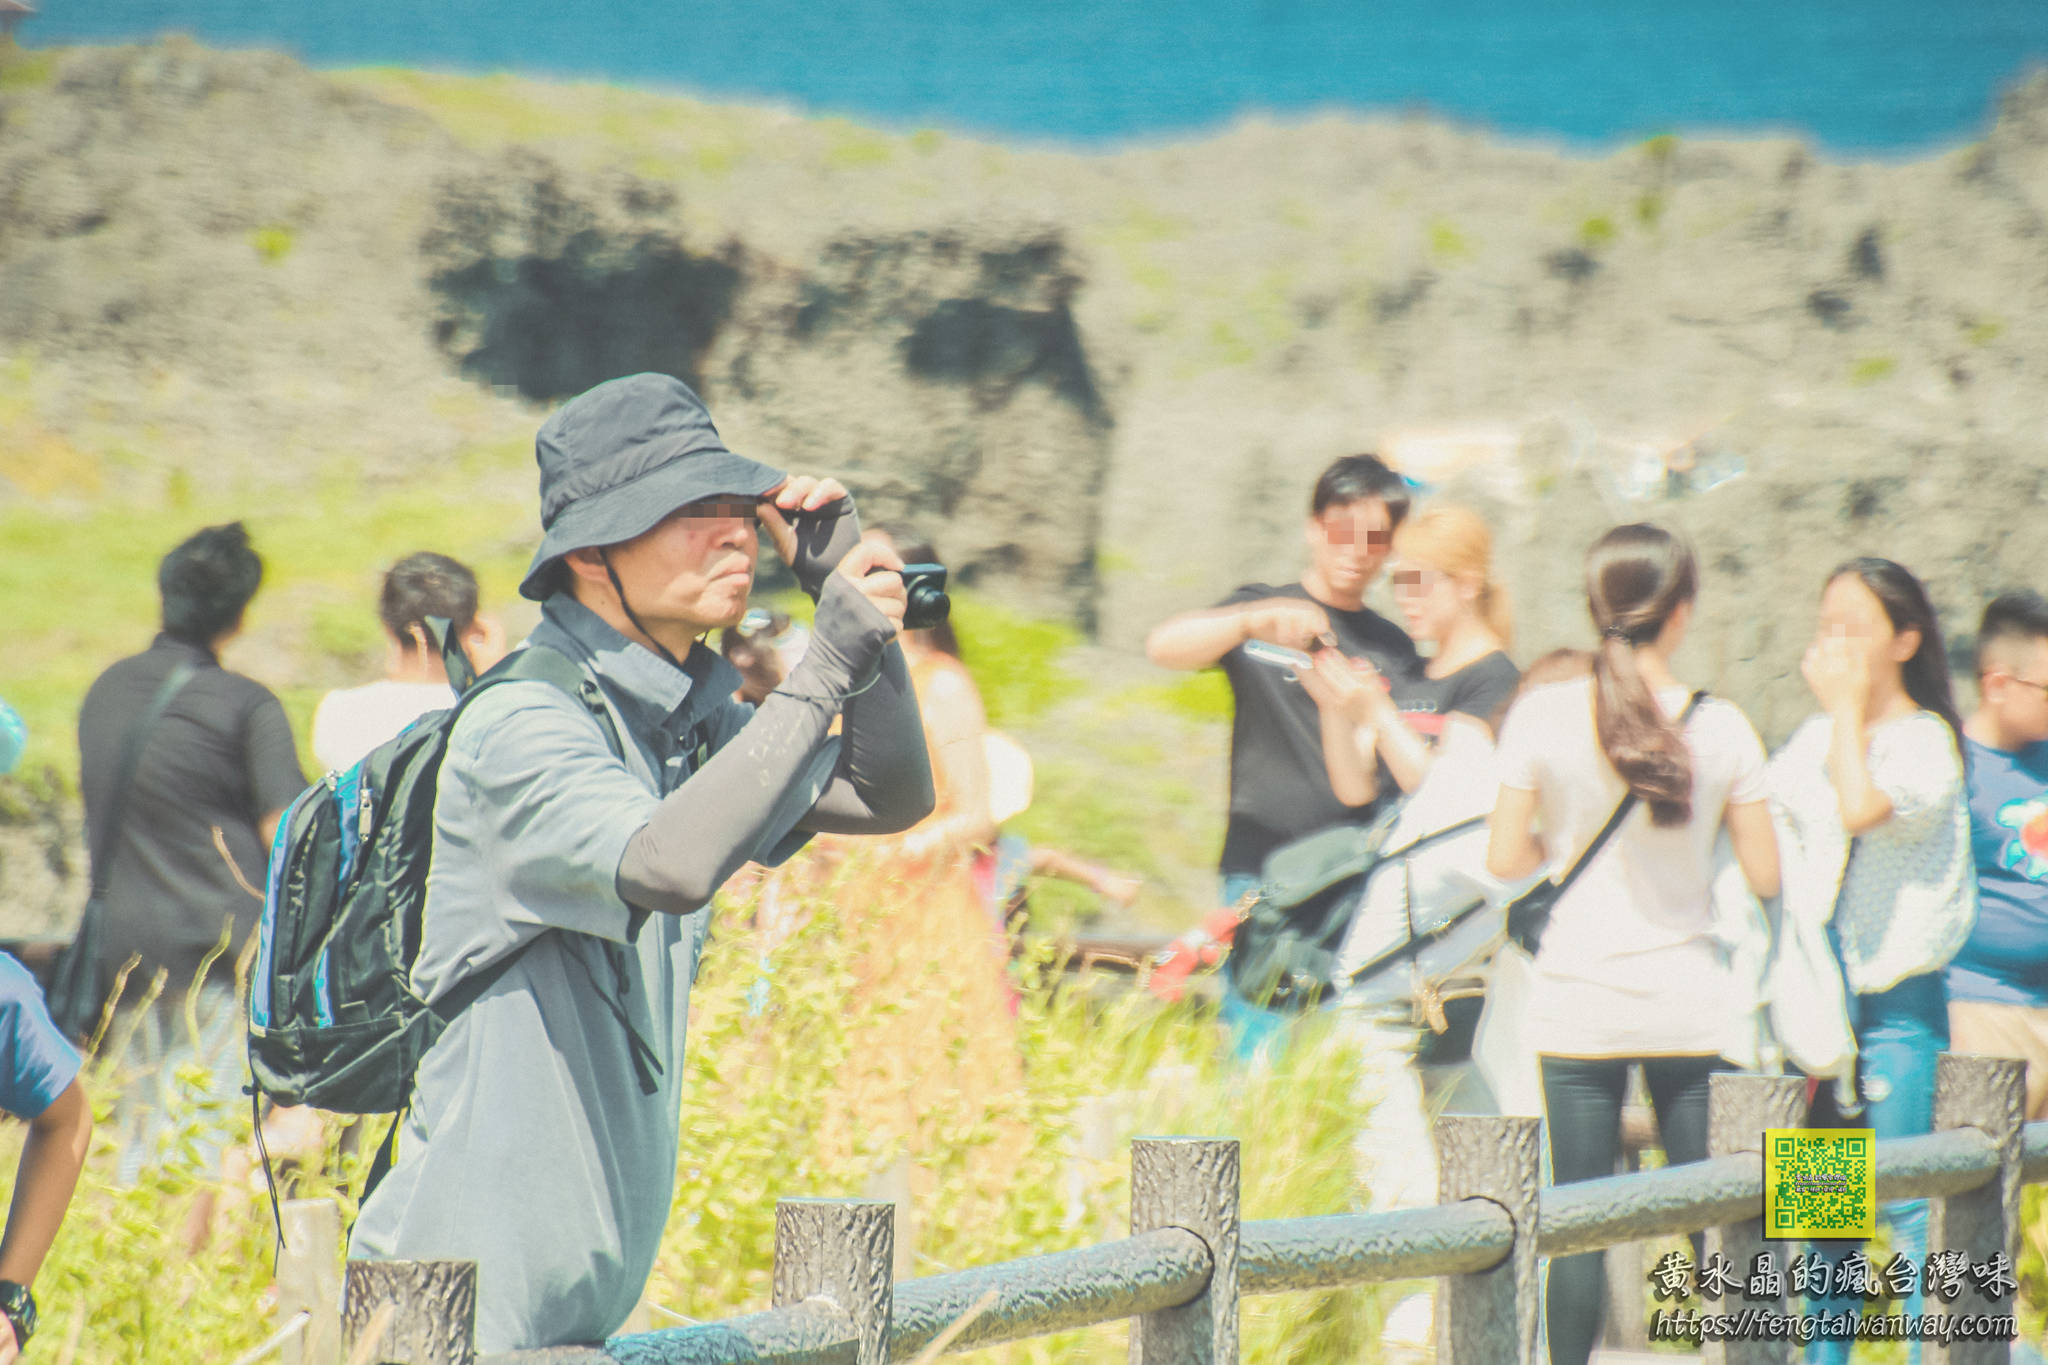 萬座毛【沖繩景點】|沖繩自駕旅遊中部高人氣必遊必拍大草原象鼻岩景點